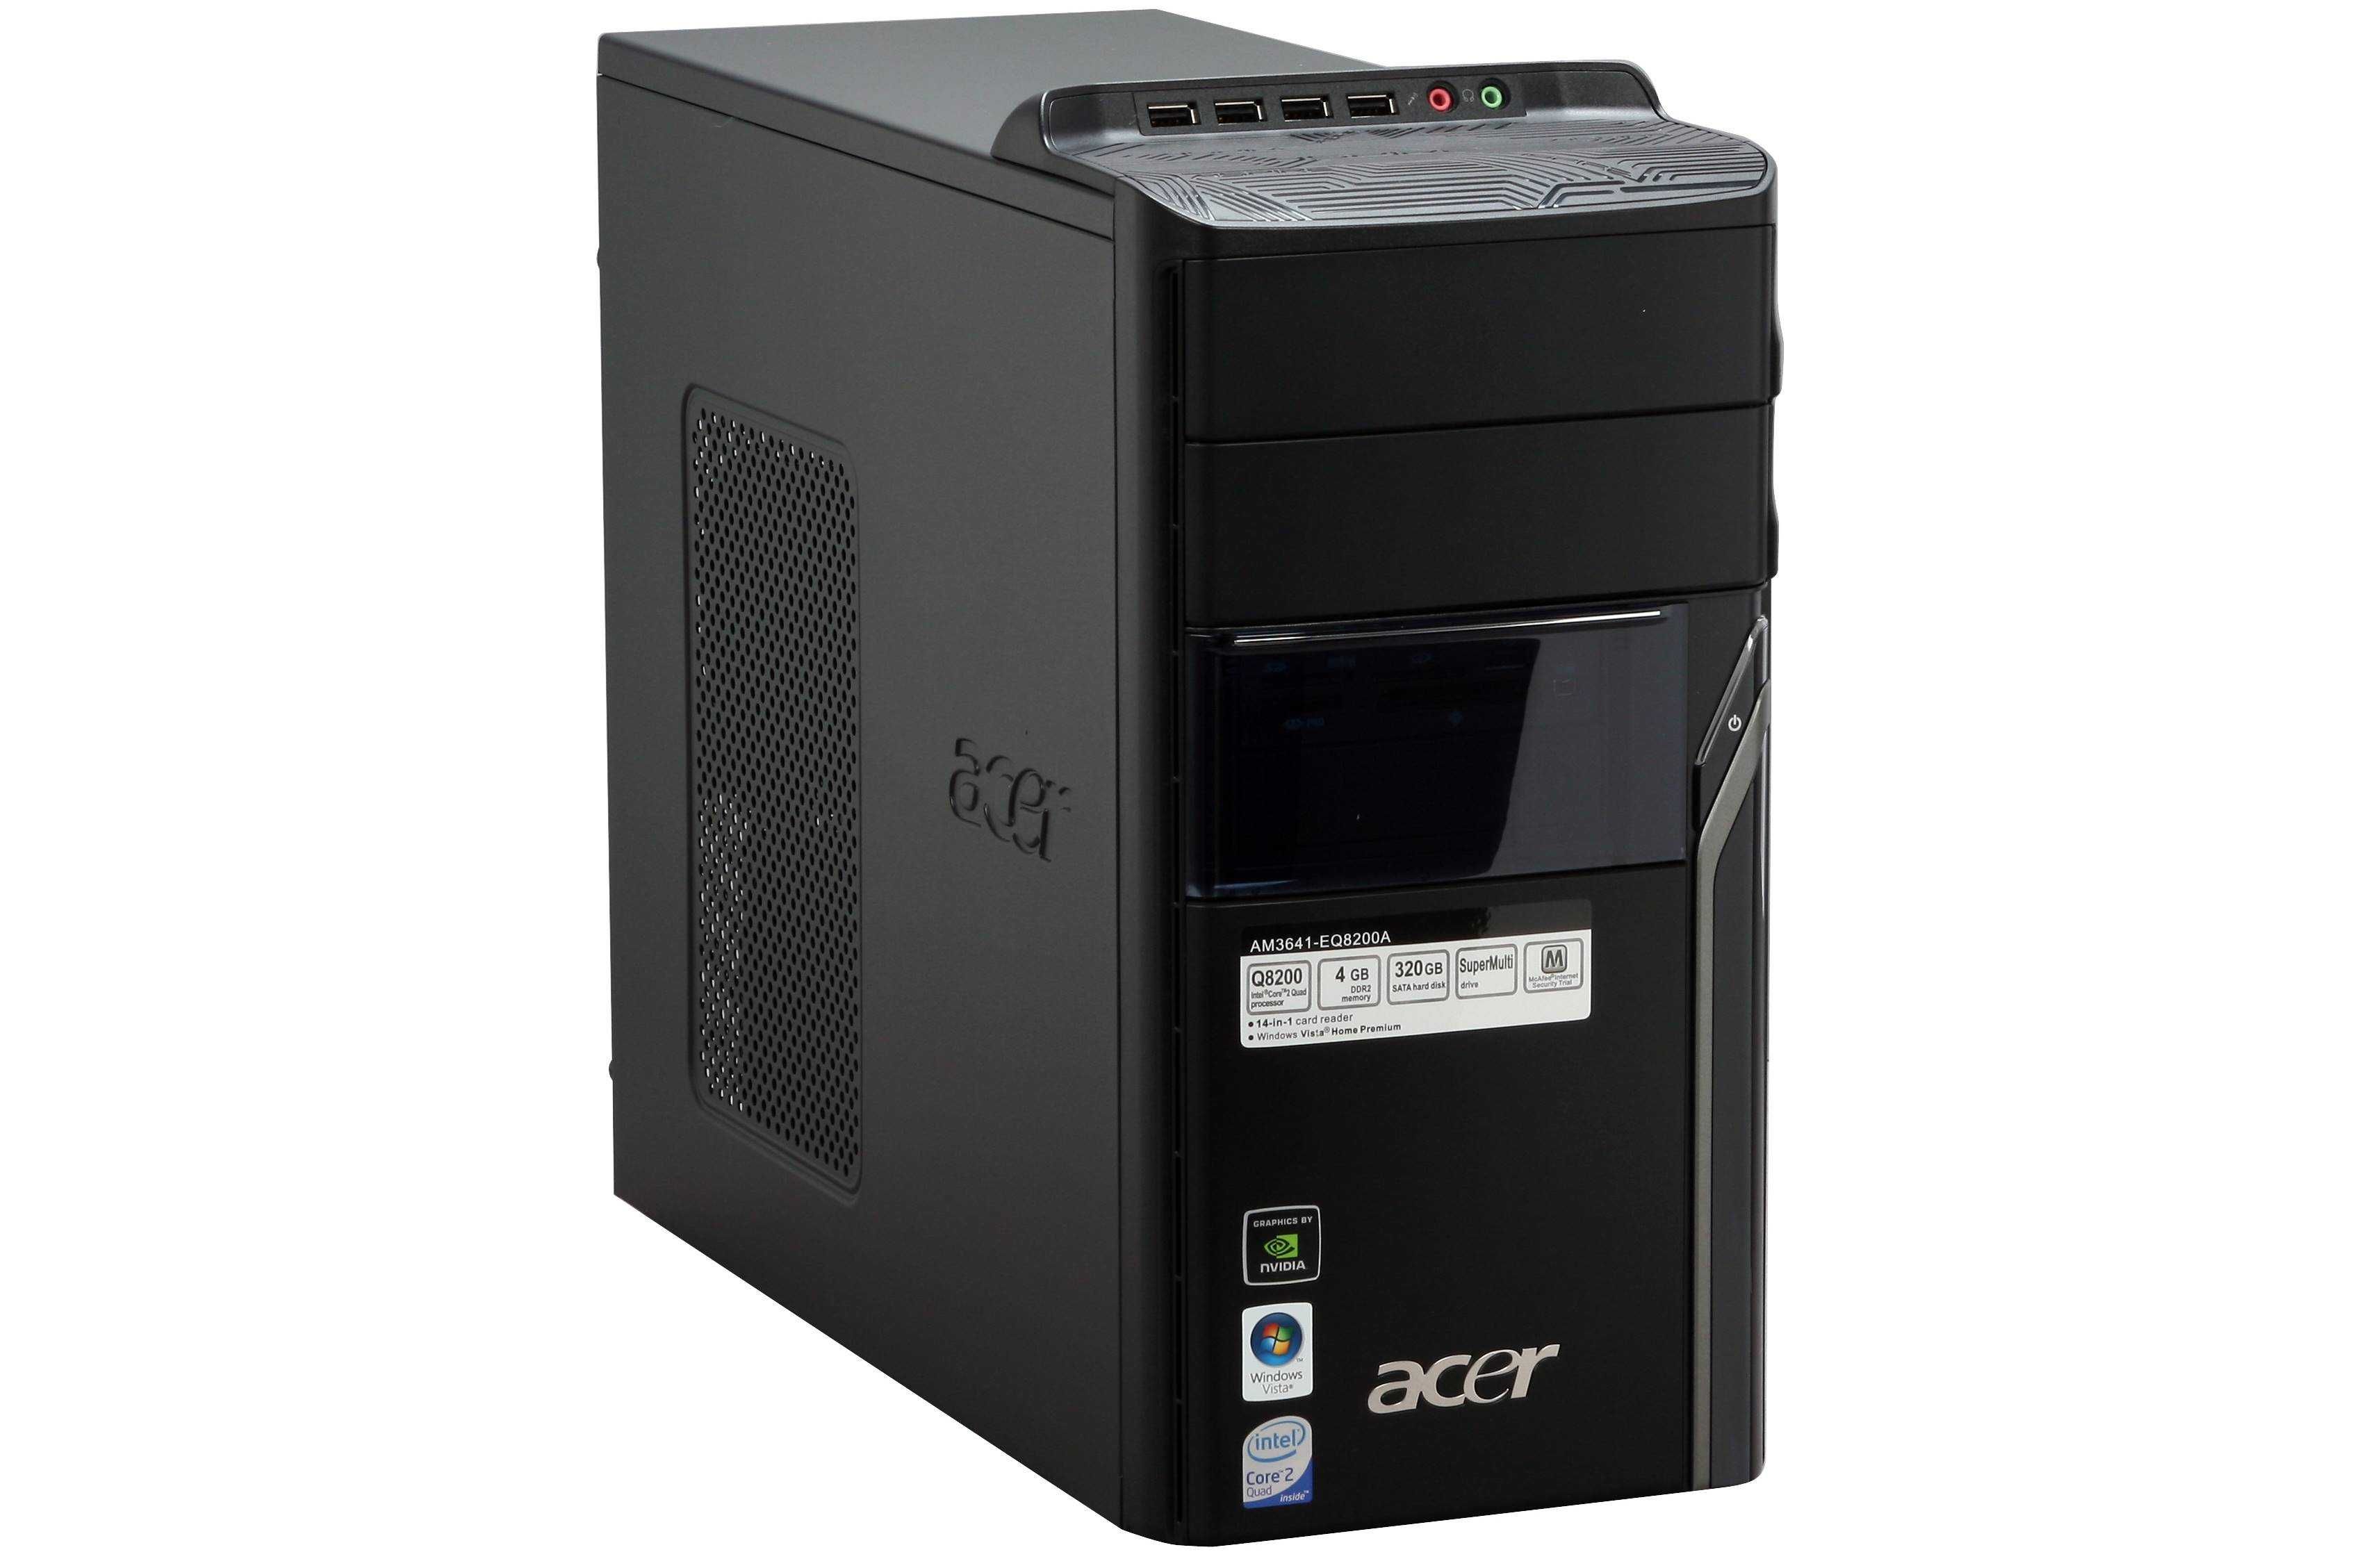 PC Acer M3641 /Asus P5QL-VM EPU Core 2 Quad Q8200 4Gb 160Gb WiFi Win7